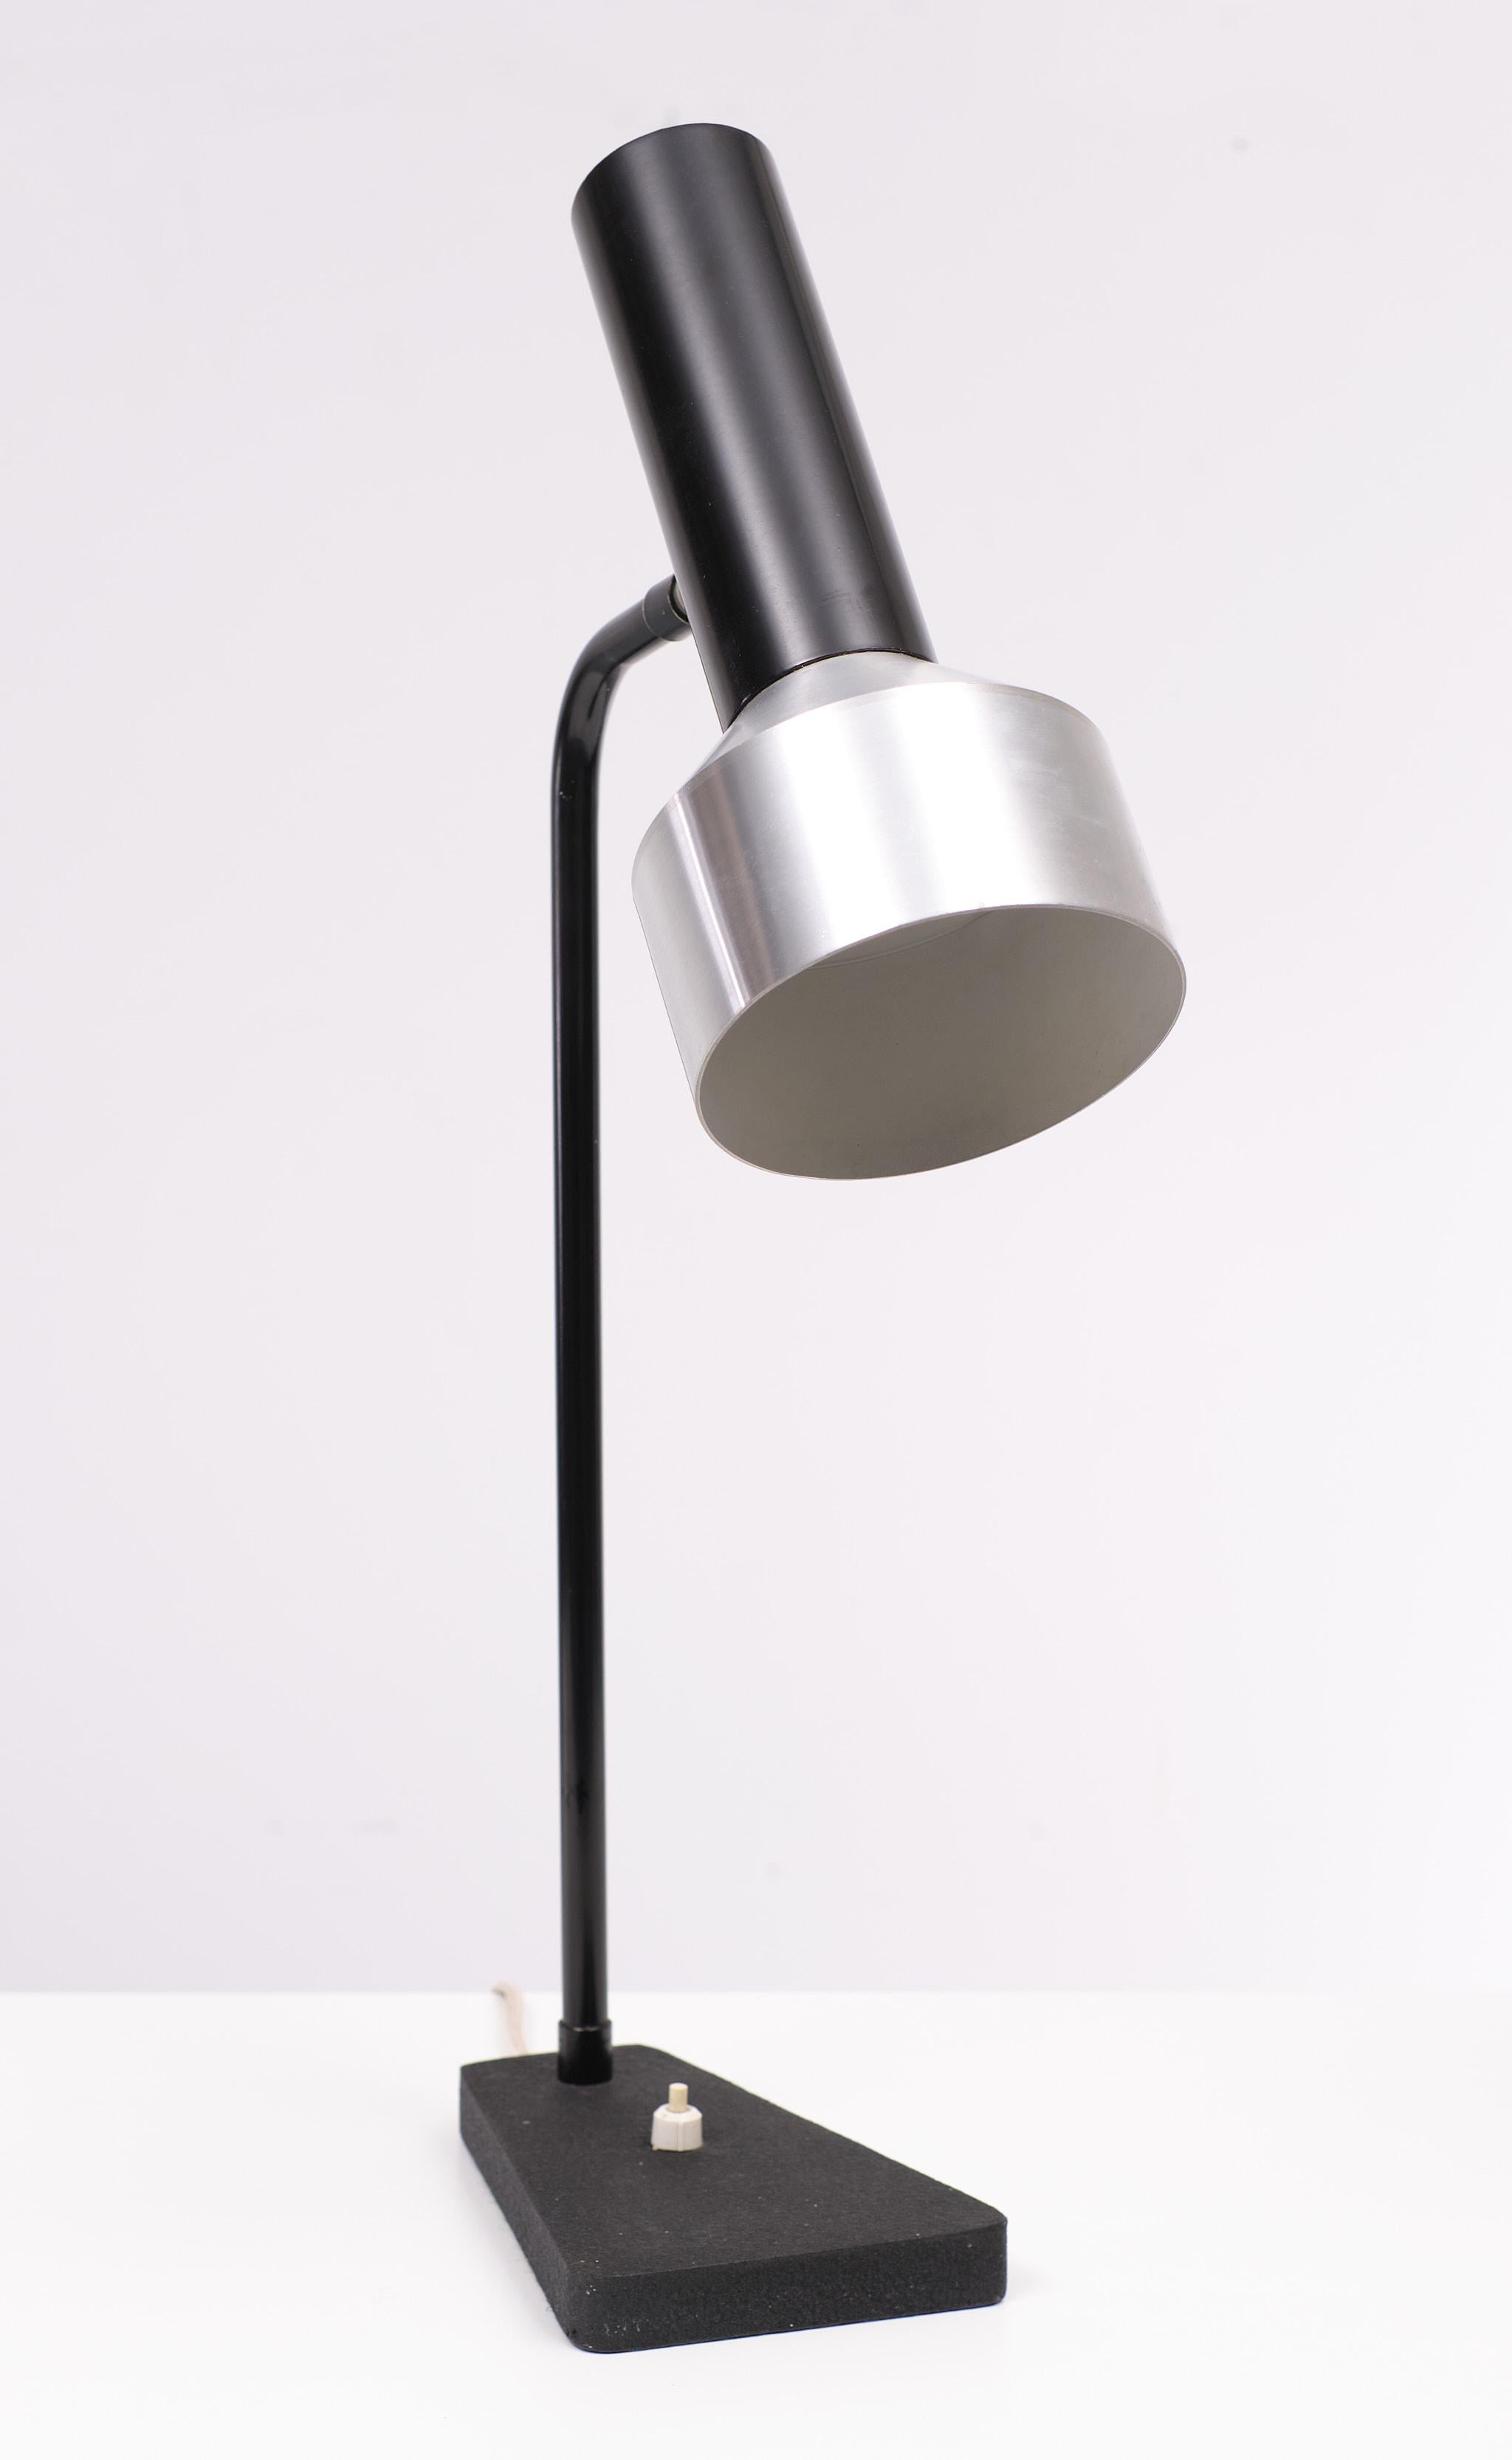 Sehr schöne seltene Anvia Almelo ,Schreibtischlampe .Aluminium Schirm .kleine Delle .
Schalter am Sockel . 1 große E27 Glühbirne benötigt.  